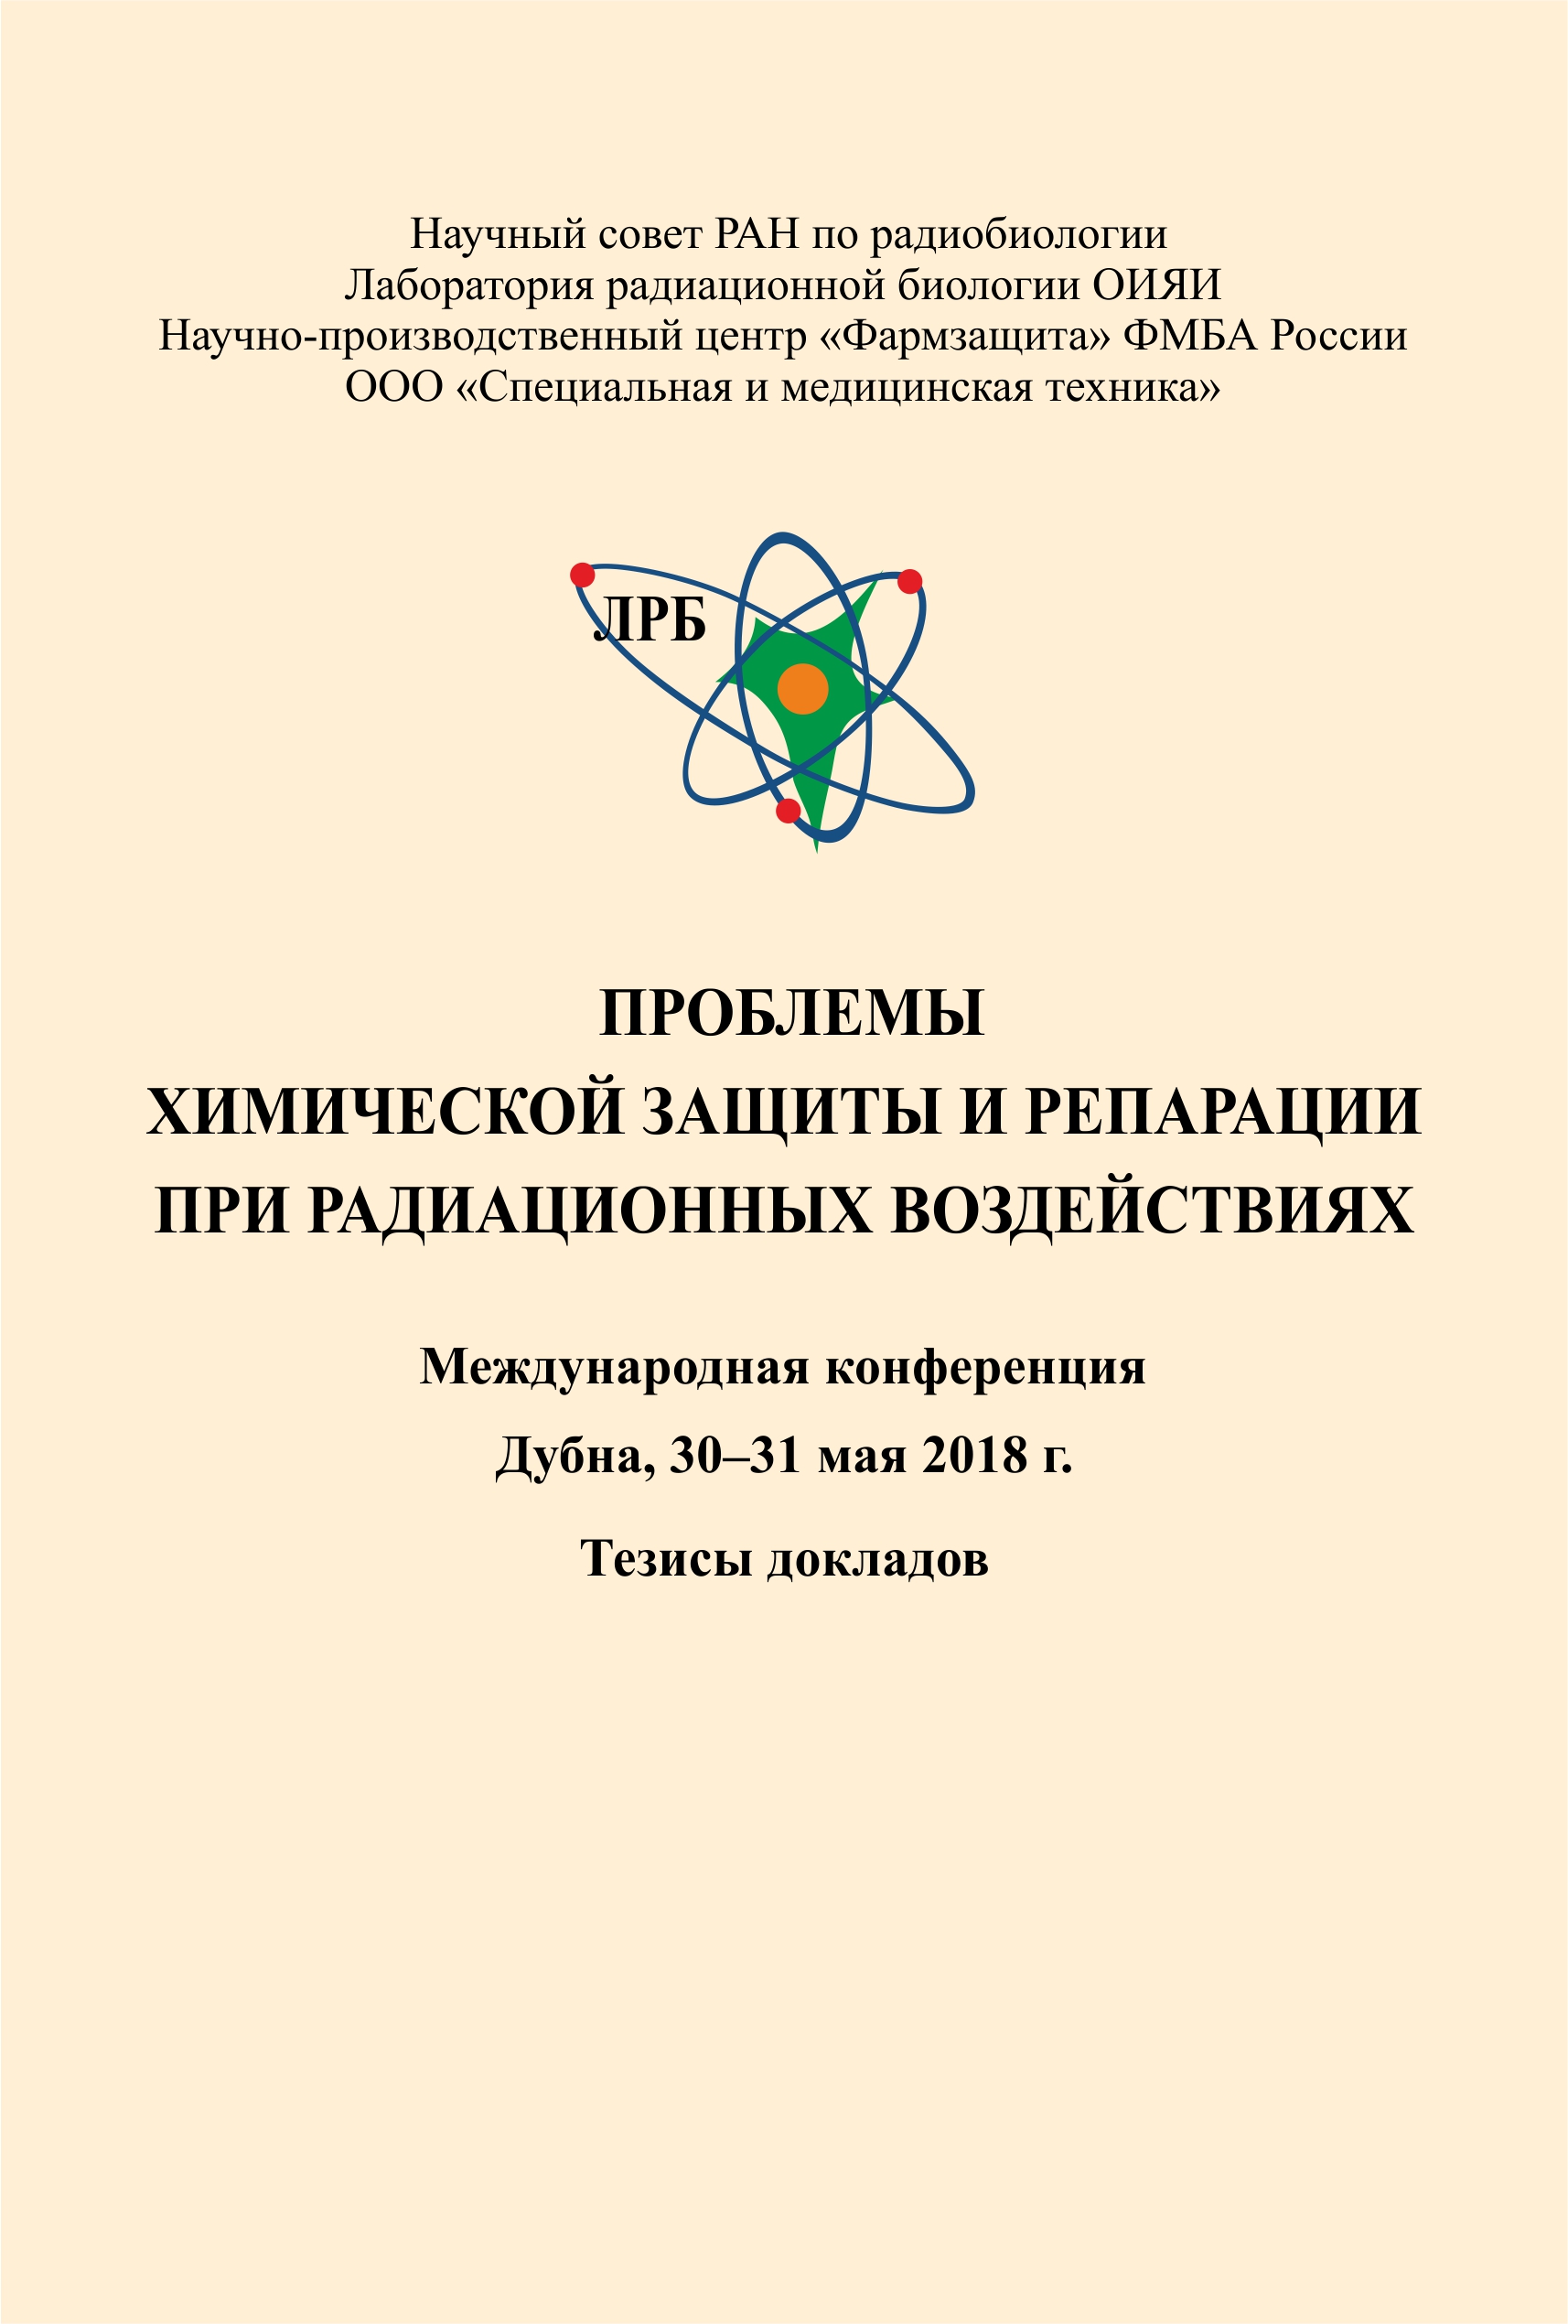 Проблемы химической защиты и репарации при радиационных воздействиях